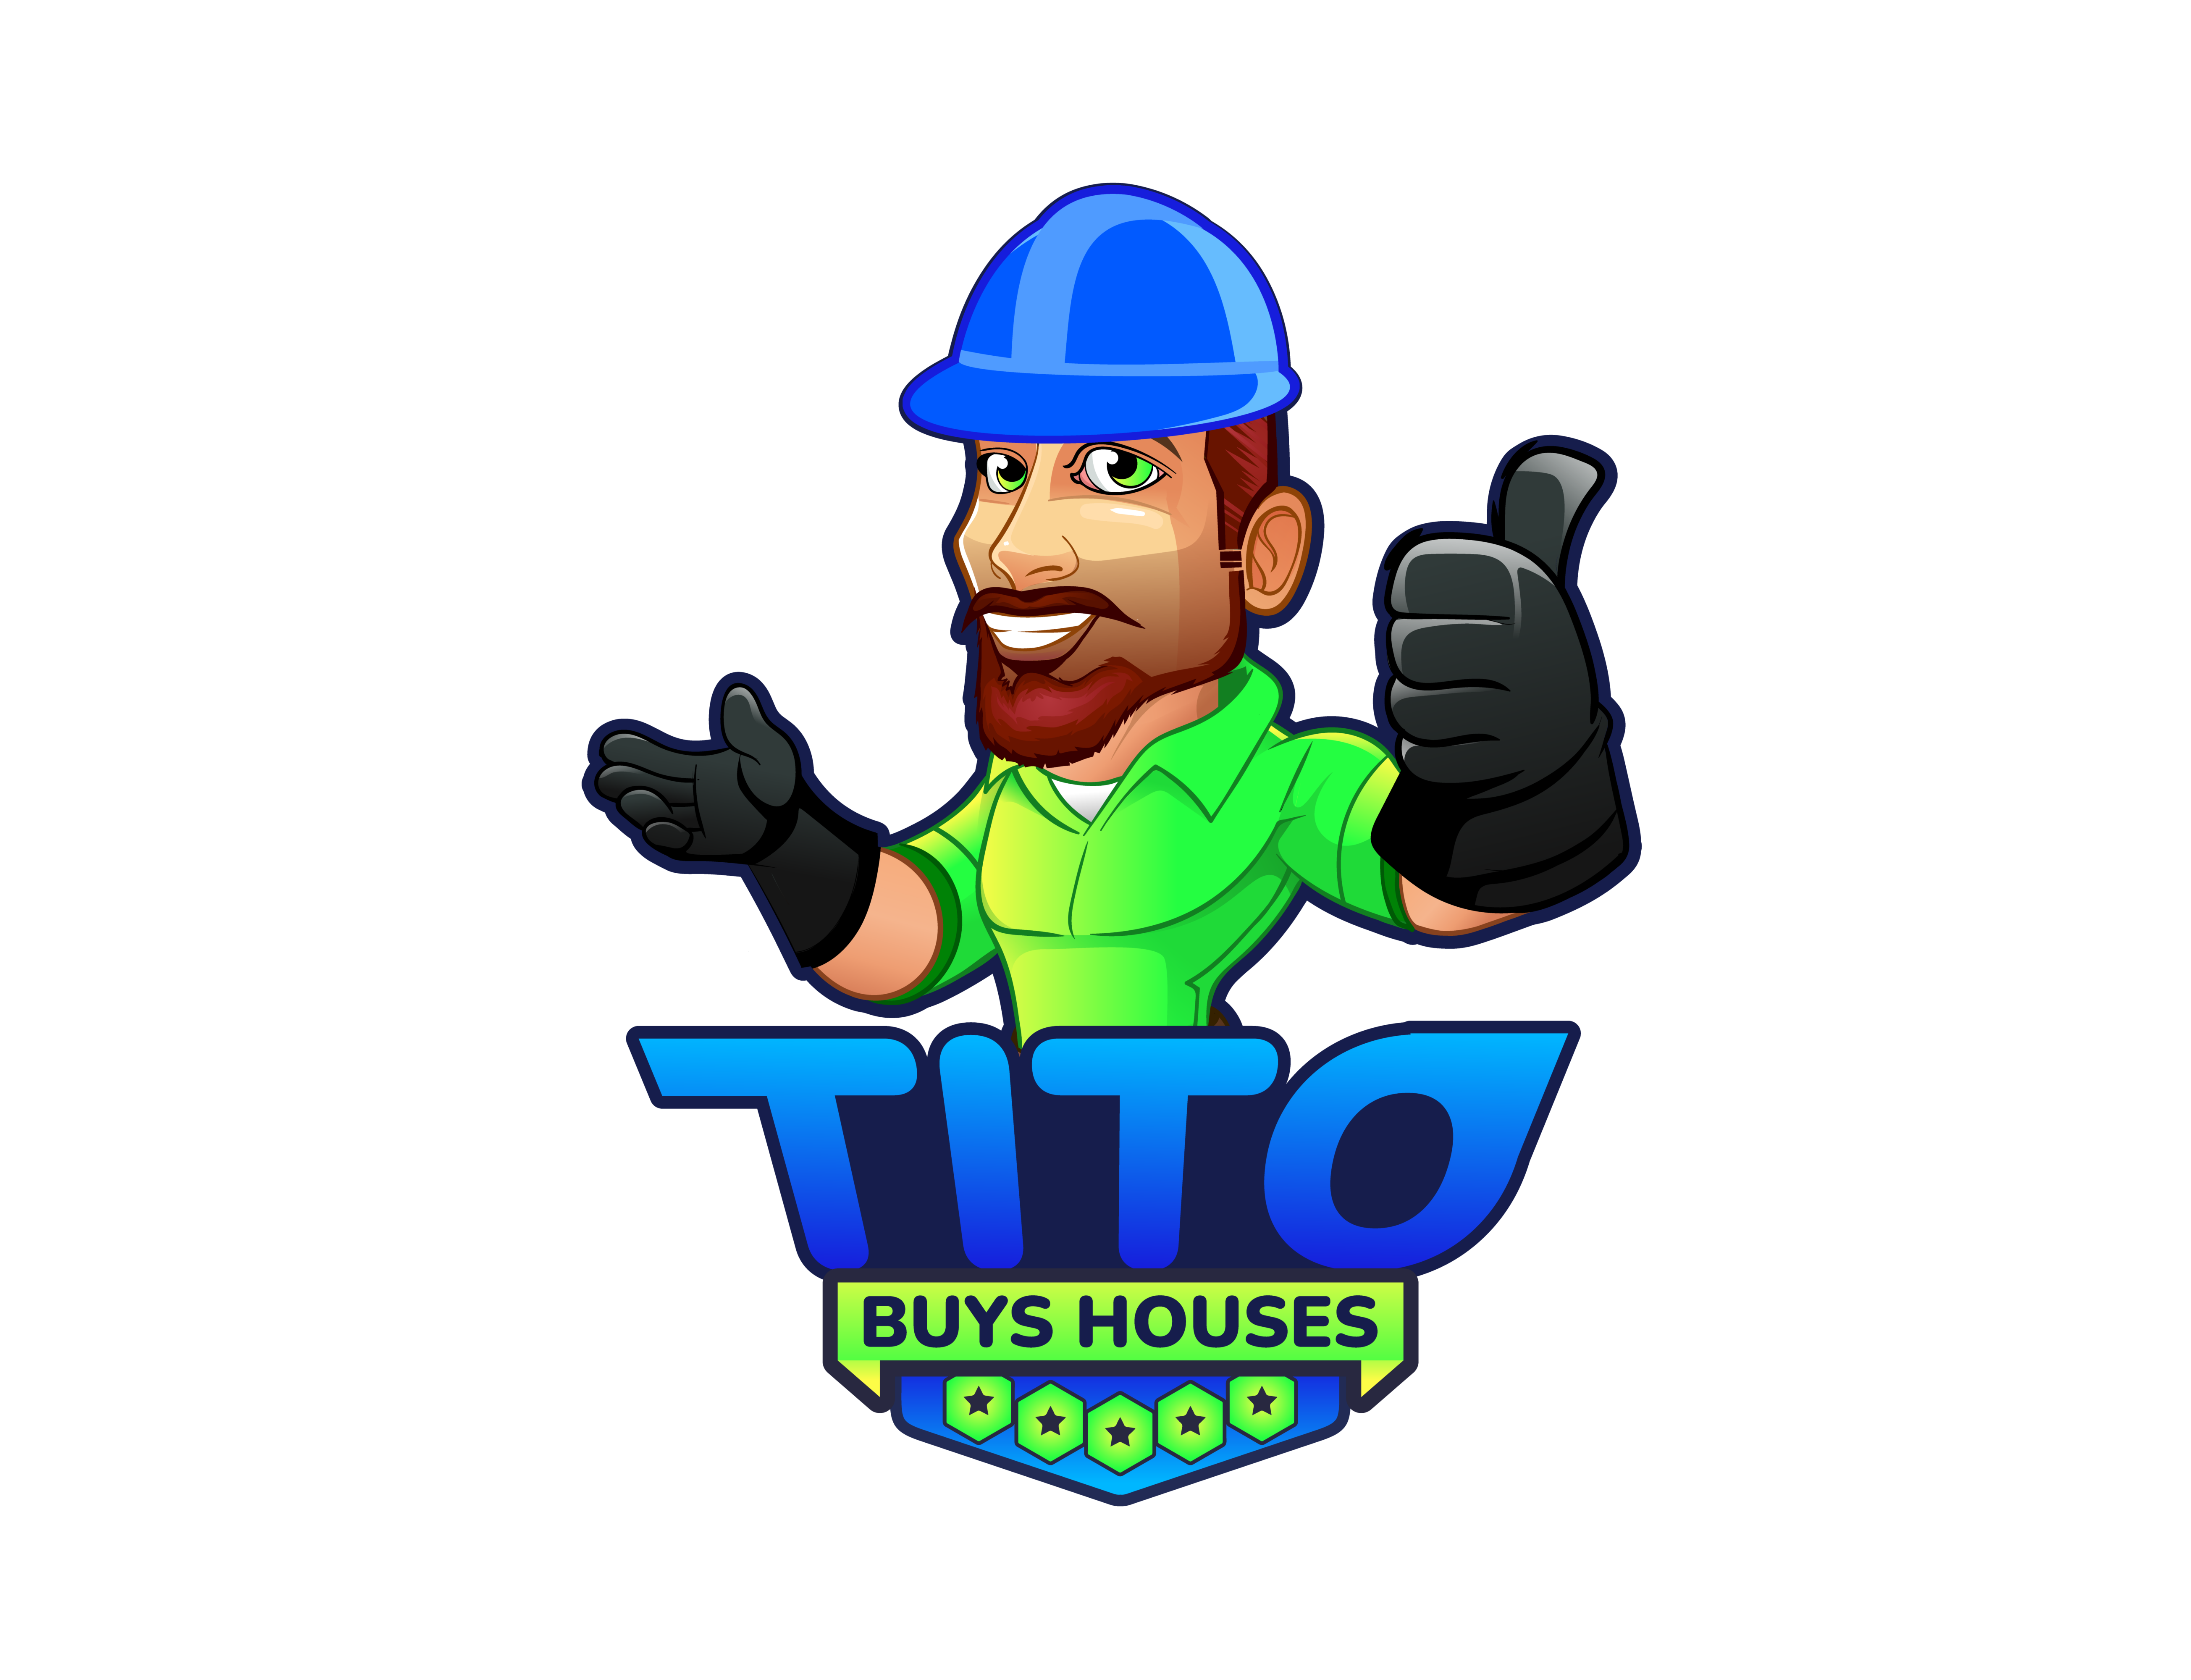 Tito Buys Houses logo